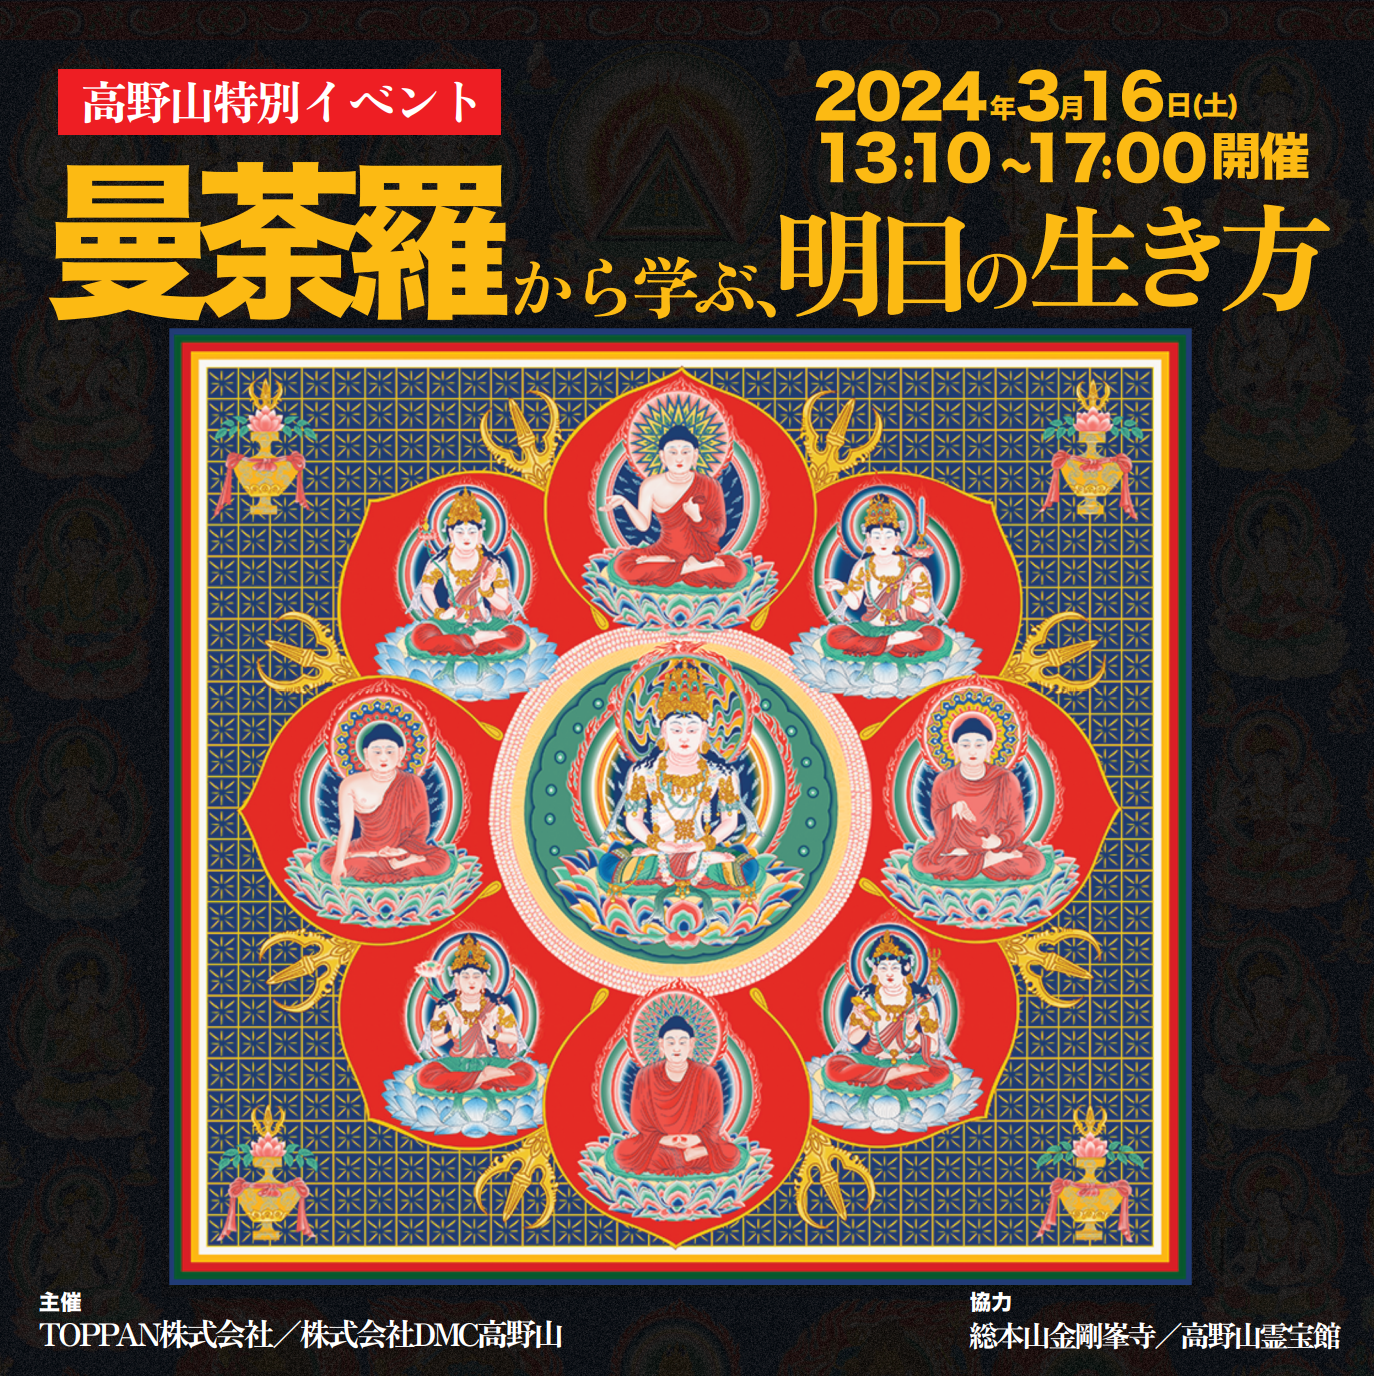 高野山特別イベント「曼荼羅から学ぶ、明日の生き方」開催のお知らせ